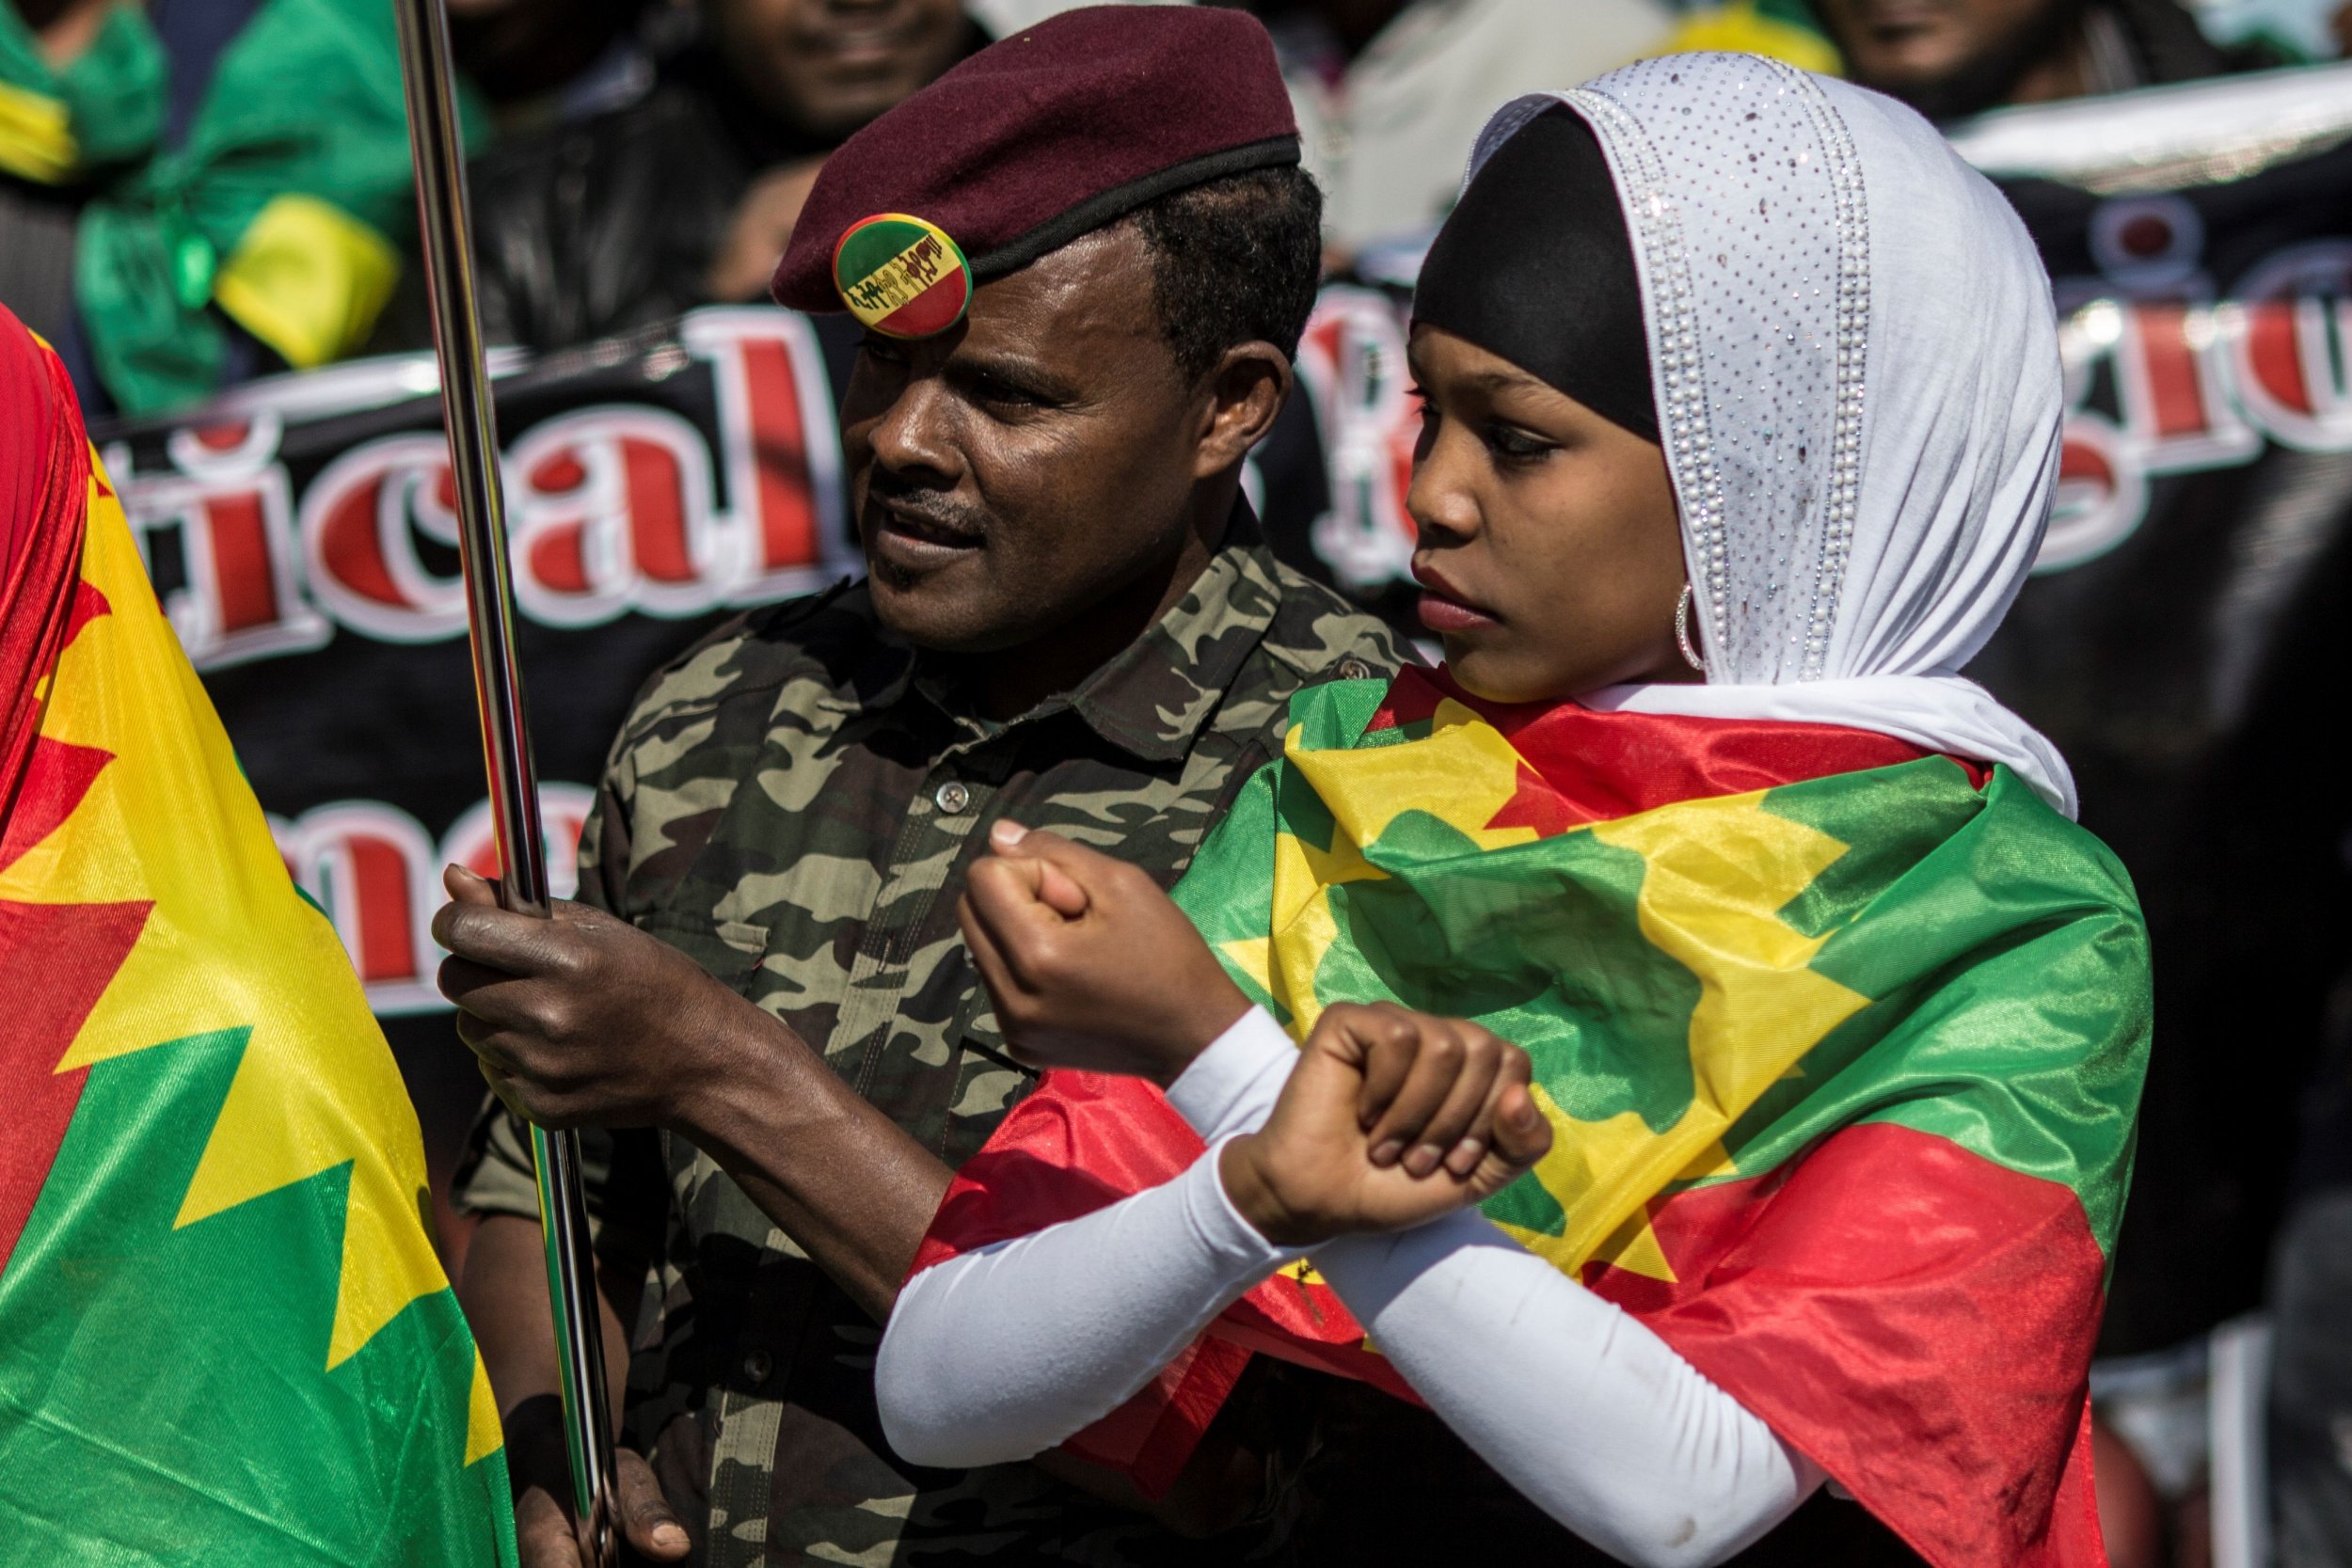 09_19_Ethiopia_conflict